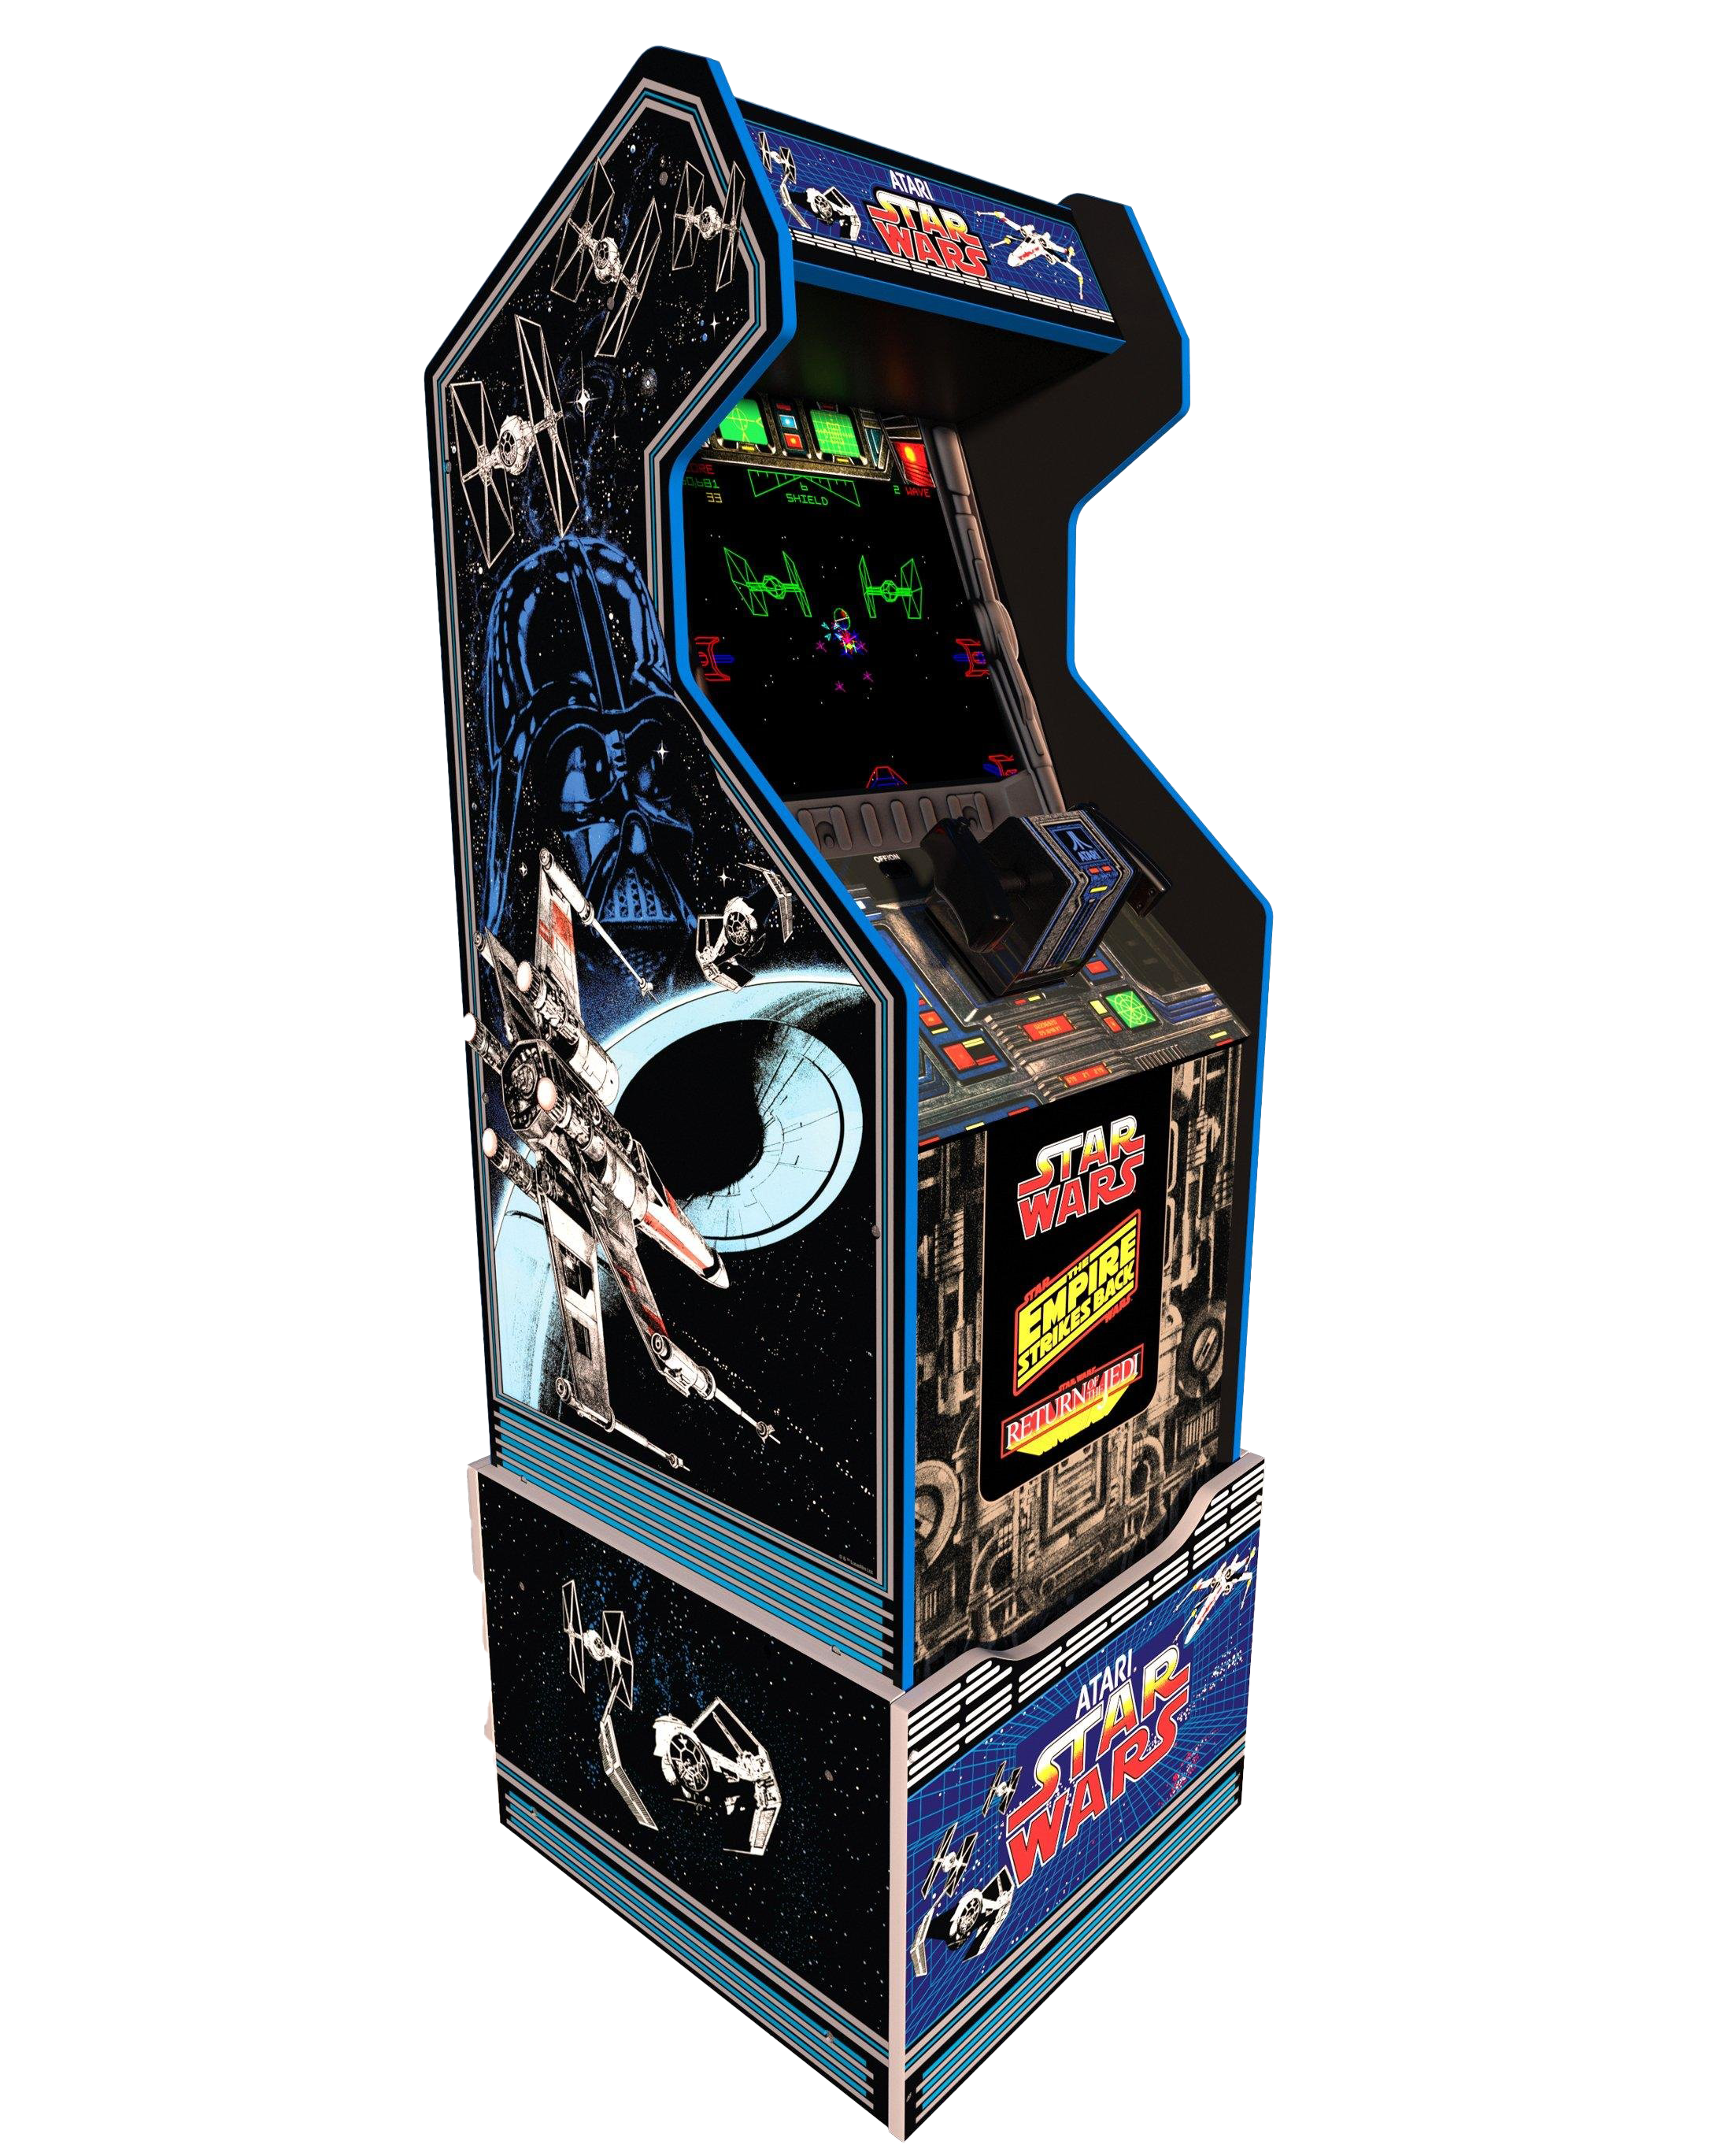 Imagem de fundo PNG da máquina de arcade